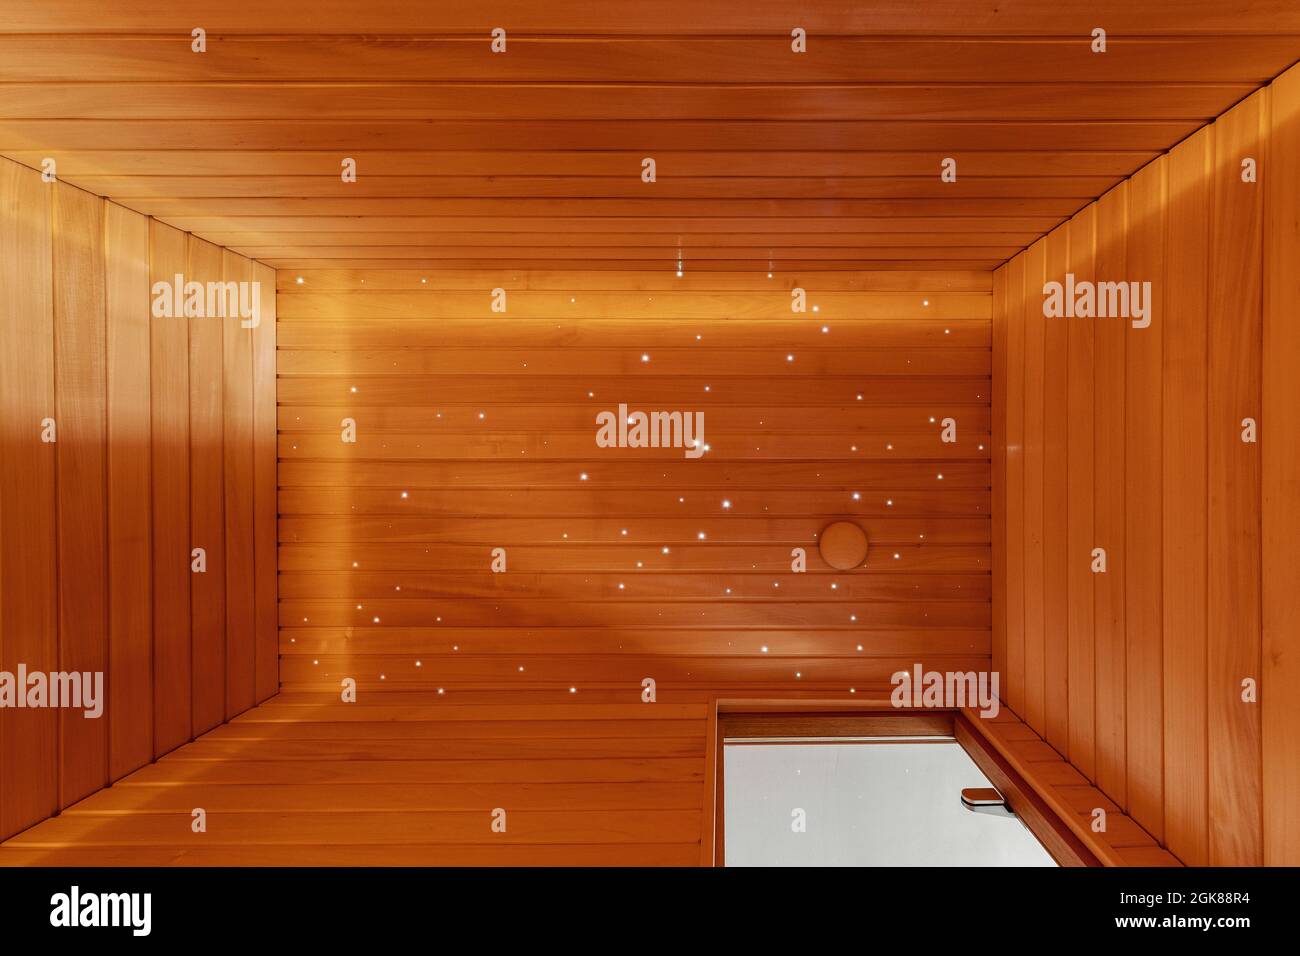 Intérieur moderne du sauna finlandais. Fond de planches plein cadre en bois dans une salle de spa vide avec de petites étoiles lumineuses au plafond. Concept de mode de vie sain Banque D'Images